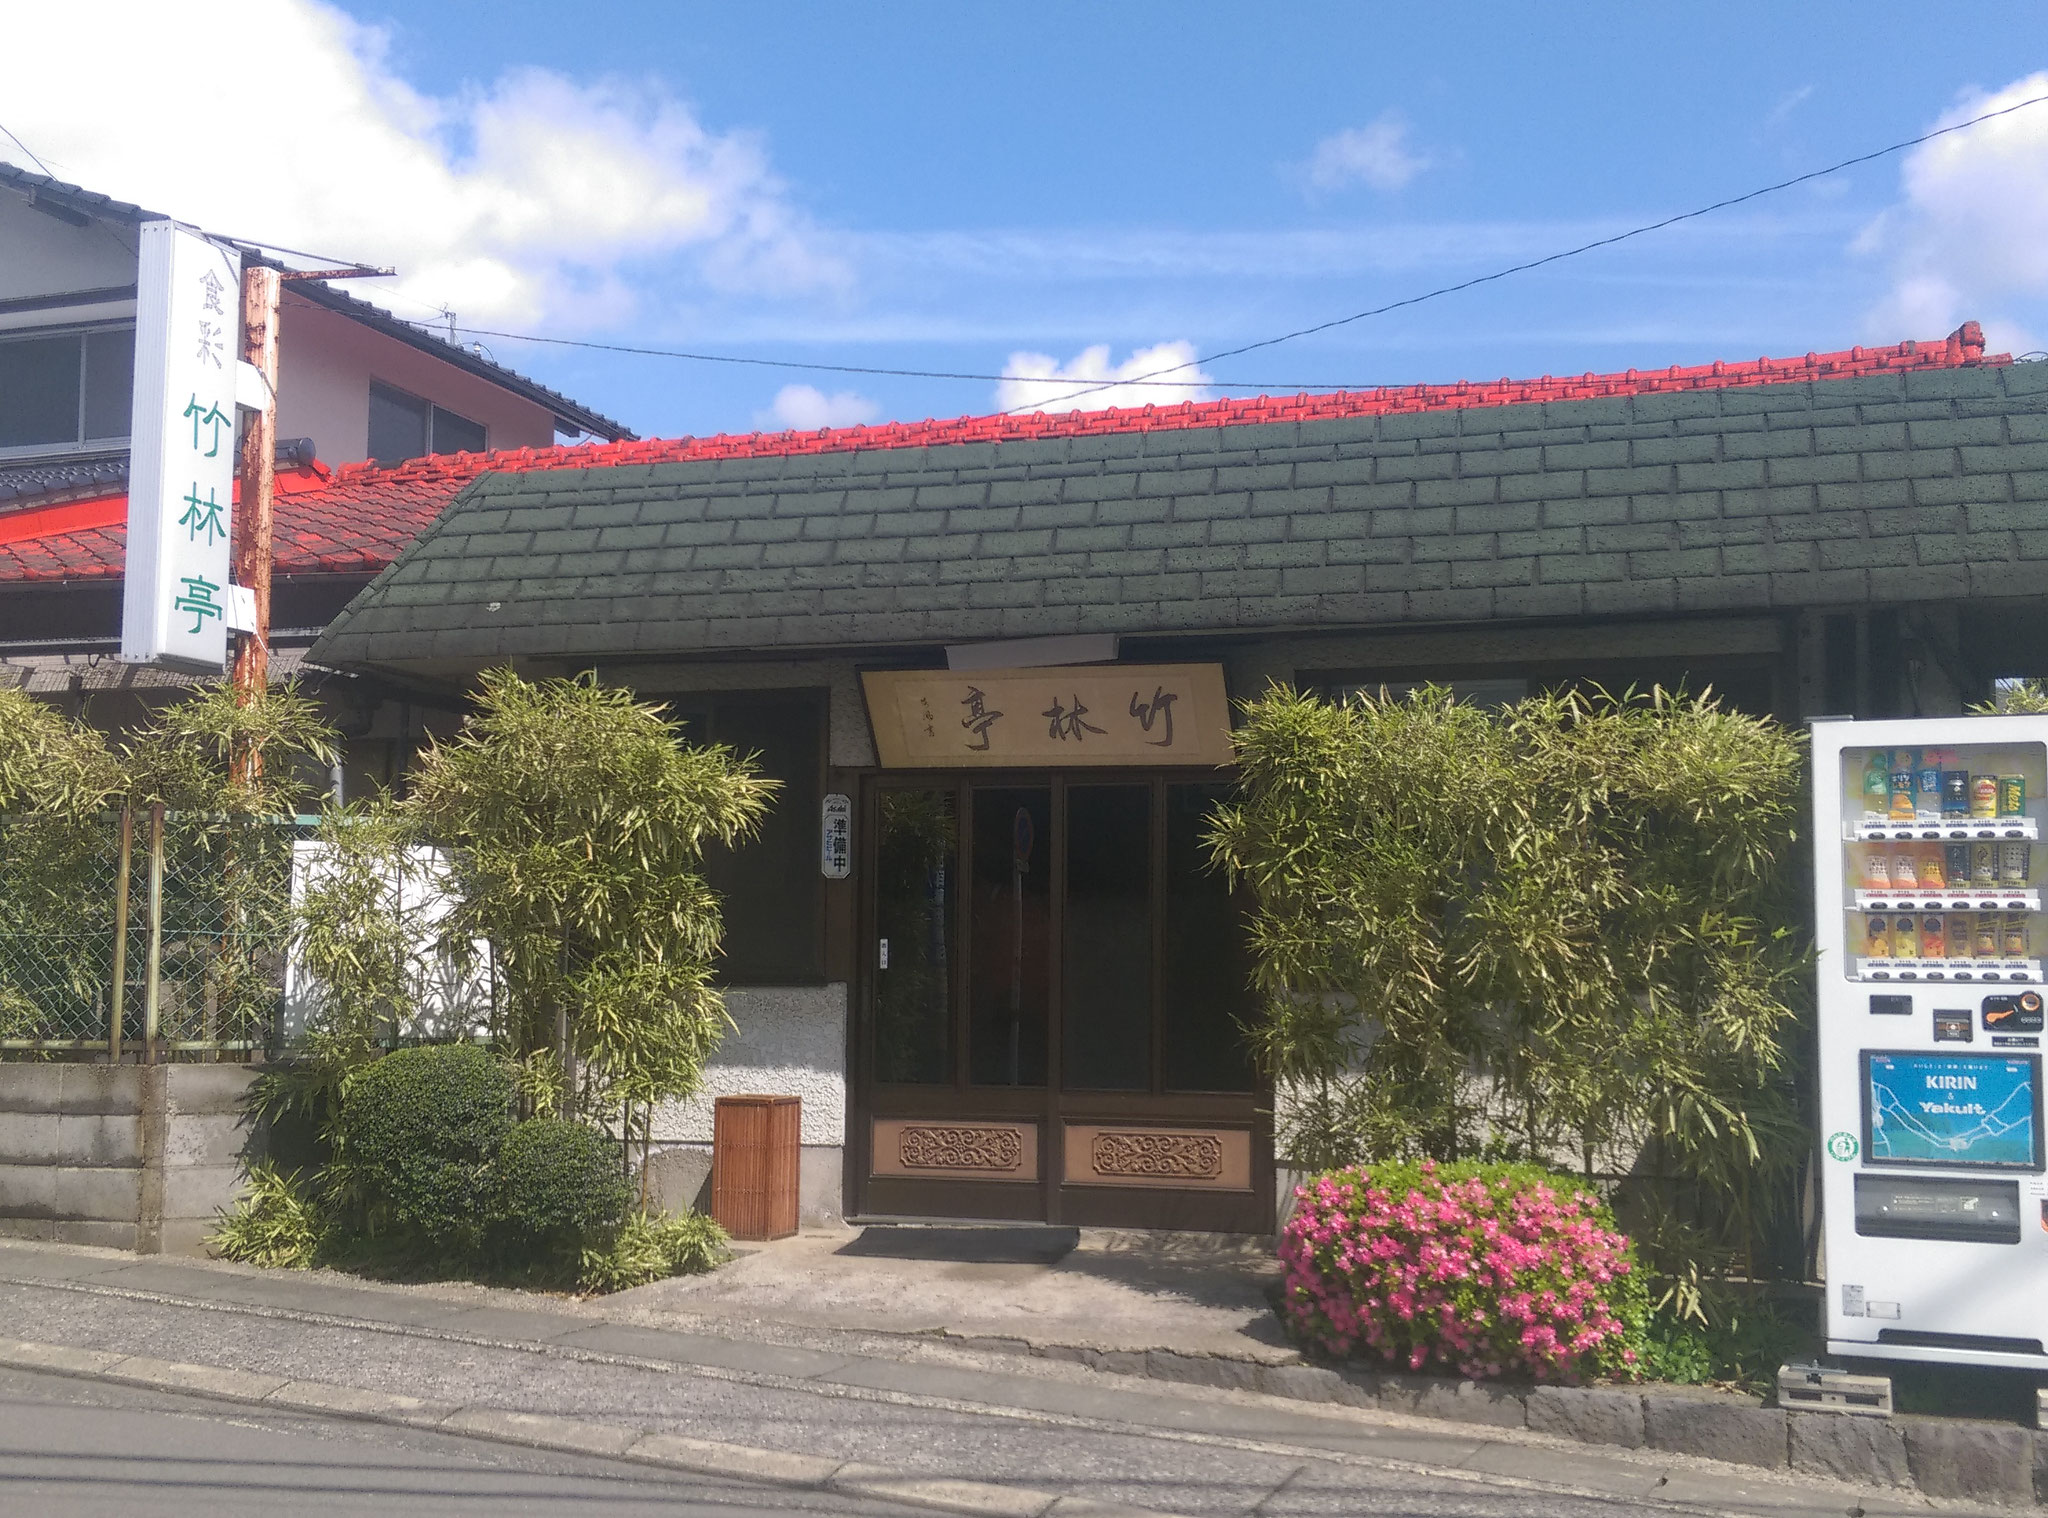 徒歩３分。四川料理「竹林亭」。知るヒトぞ知る本格四川料理のお店。